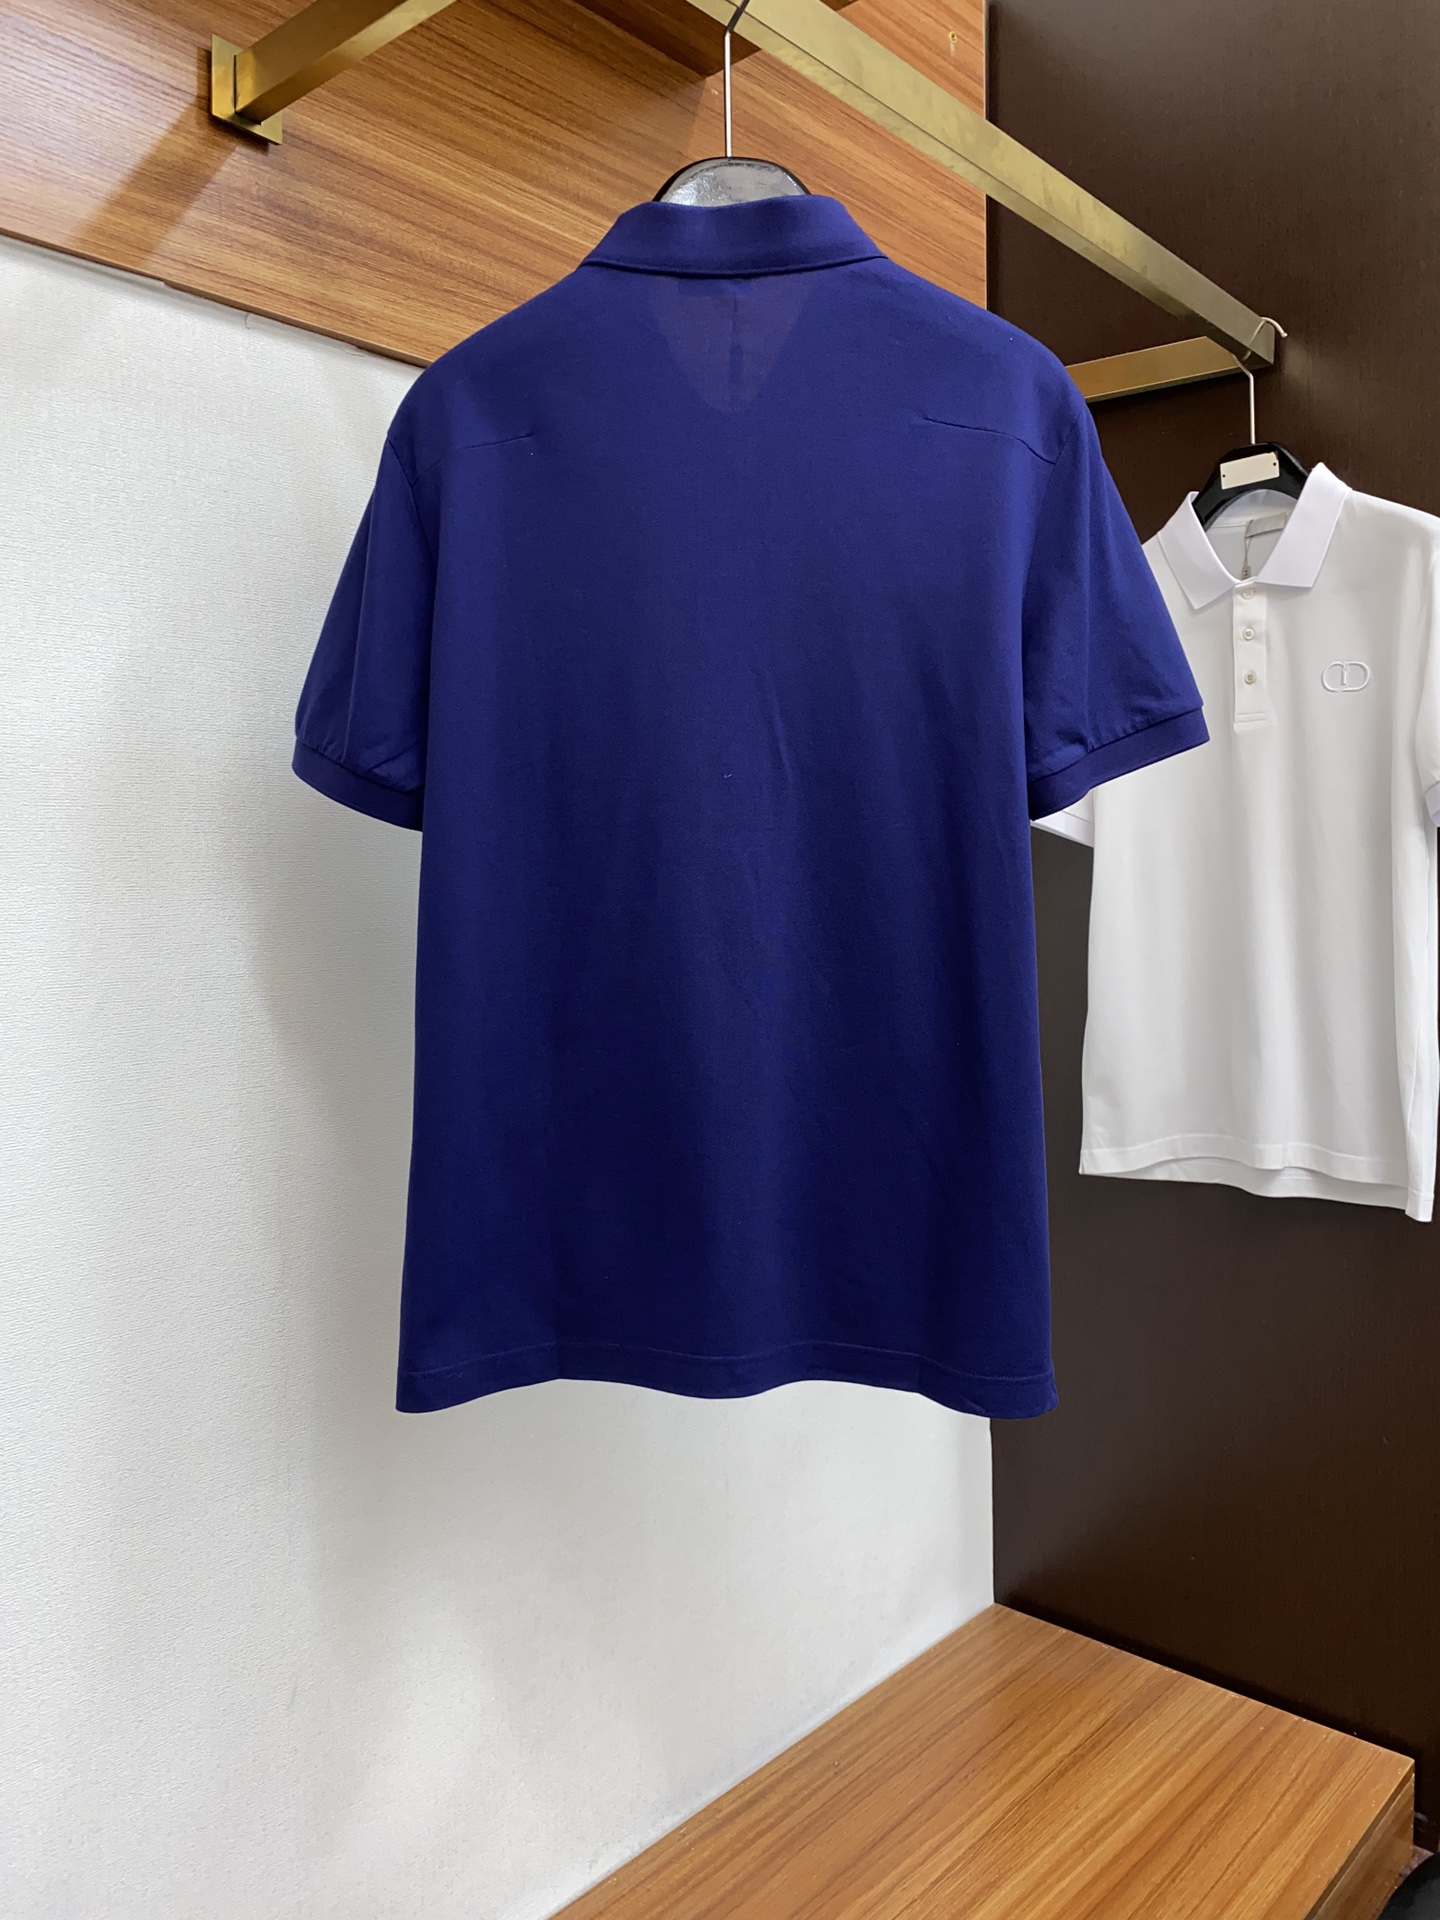 ディオール 激安通販 スーパーコピー 半袖 Tシャツ コットン ブルー 柔らかい 高級 花柄_6